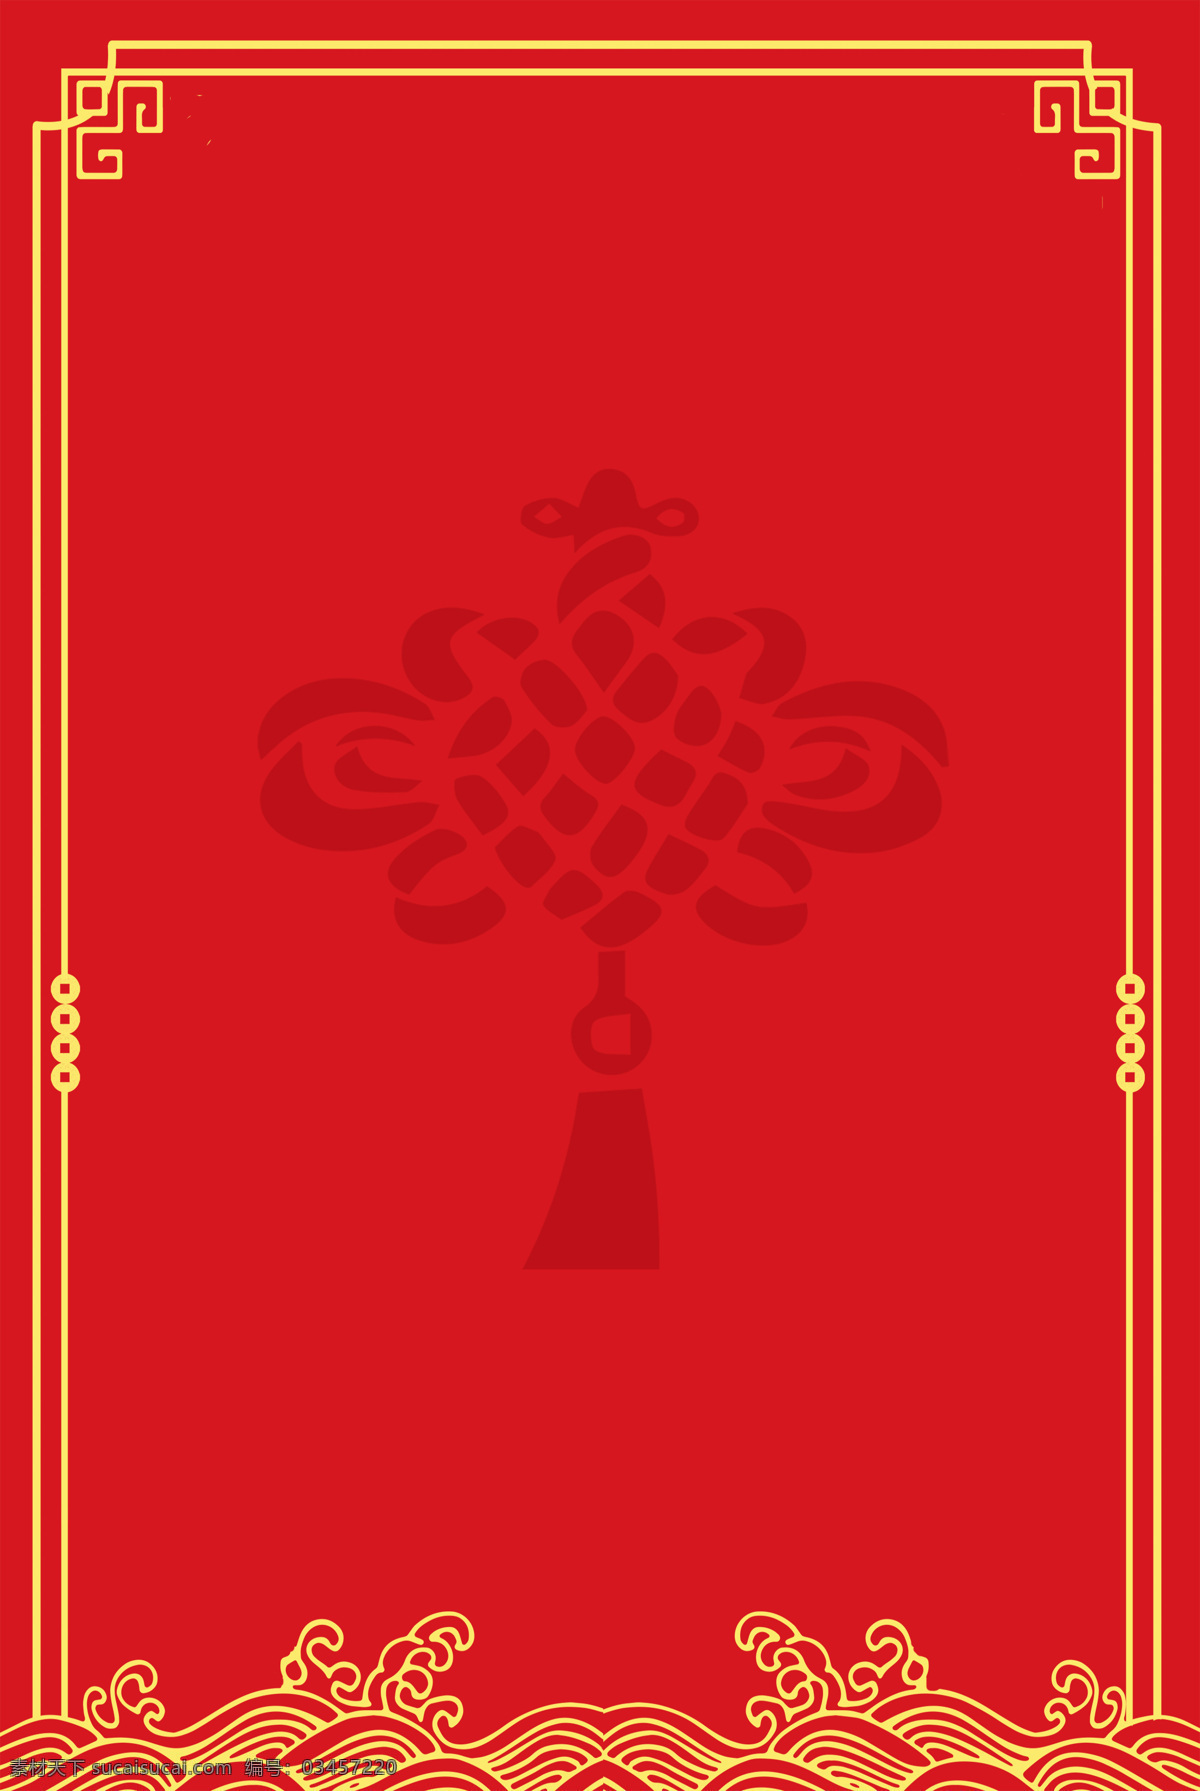 红色 古风 中国结 波纹 边框 背景 背景素材